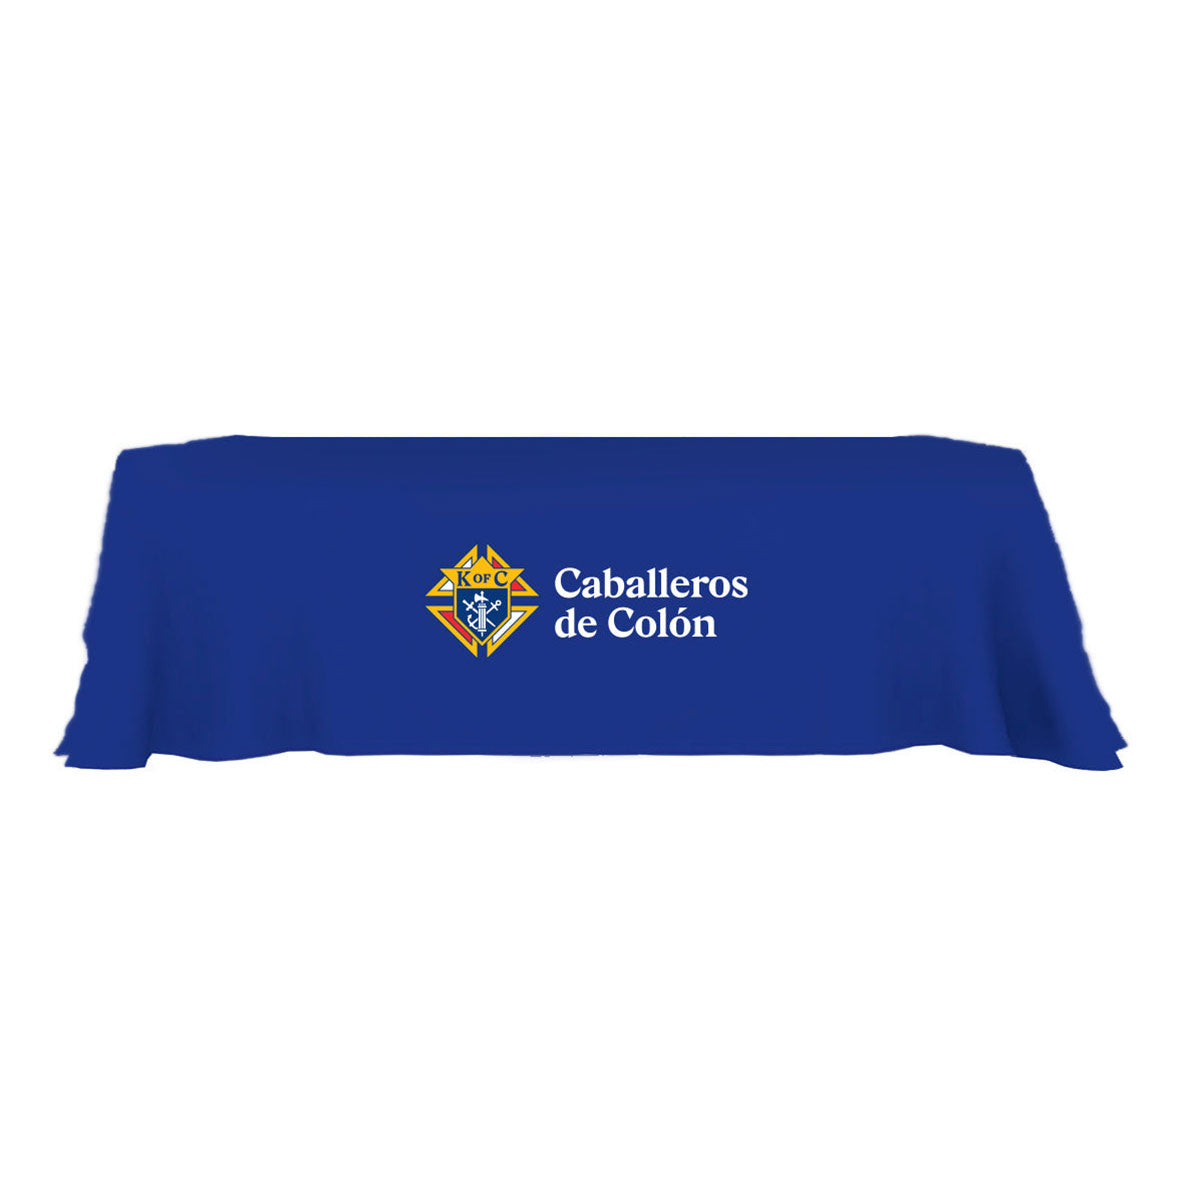 NAVY Tablecloth for 6&#39; Table - KofC or Caballeros de Colon